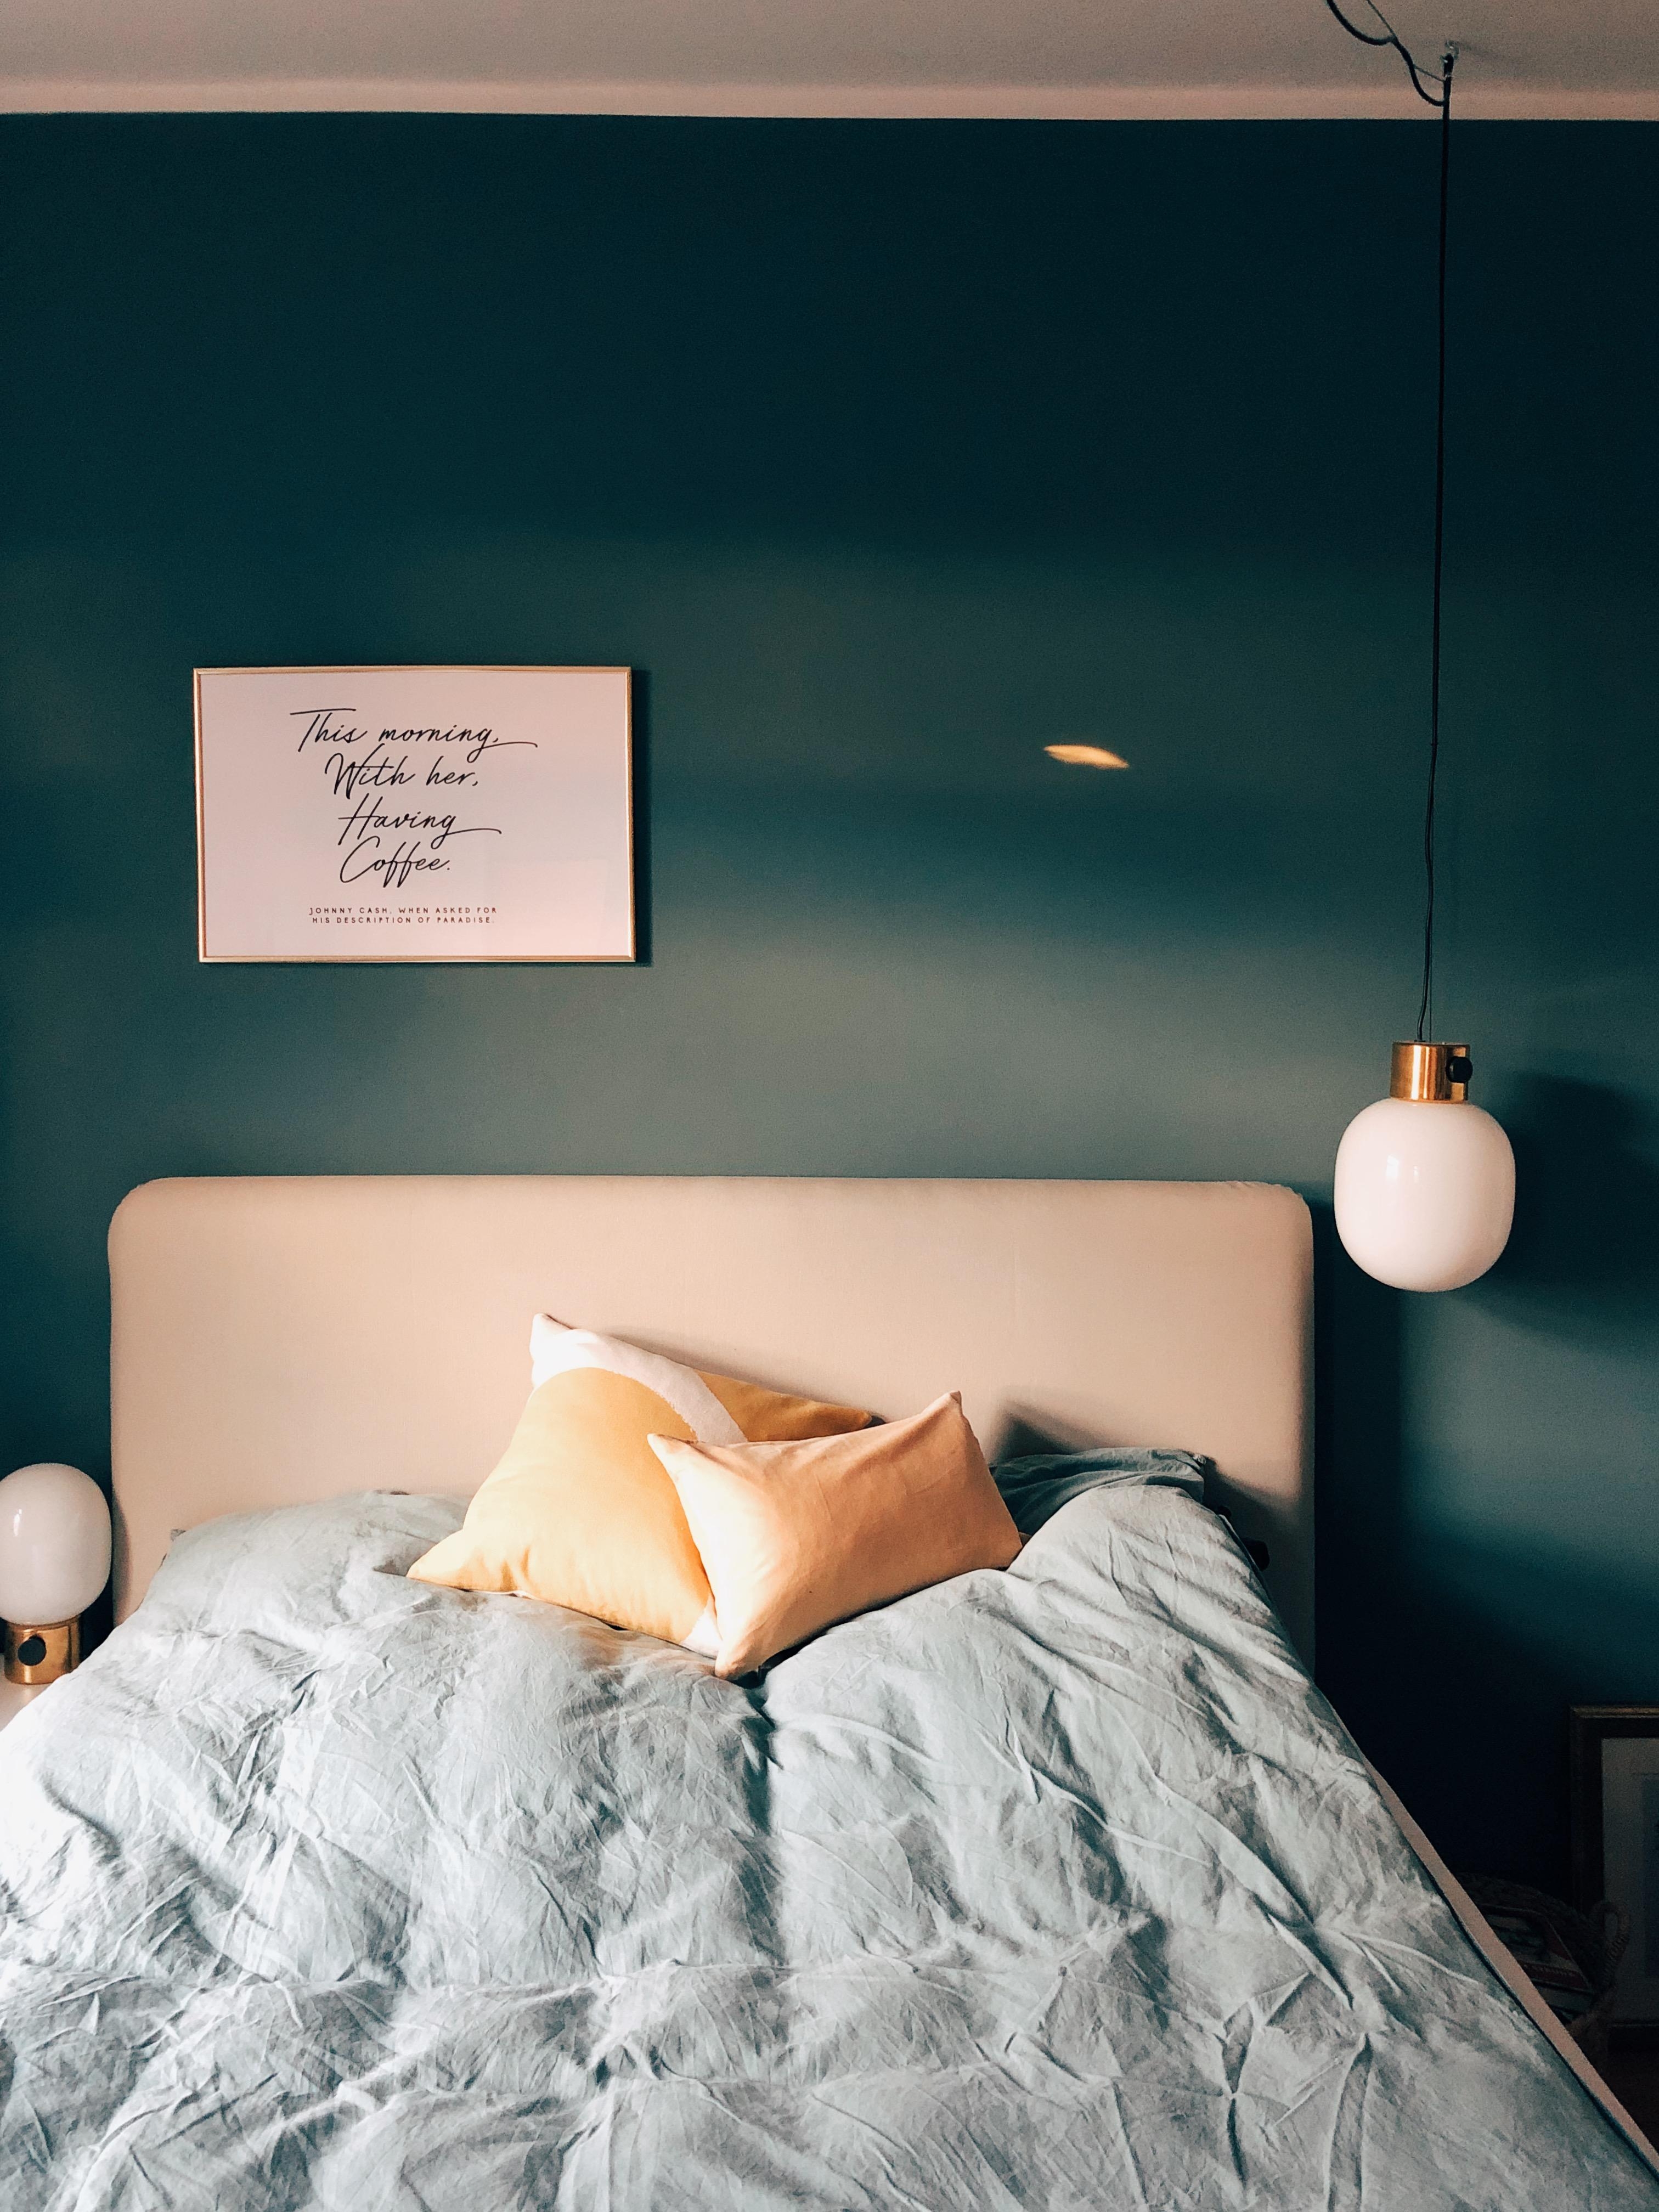 Die 3G für zu Hause: goldig, grün, gemütlich.
#bedroom #schlafzimmer #wandfarbe #grün #menu